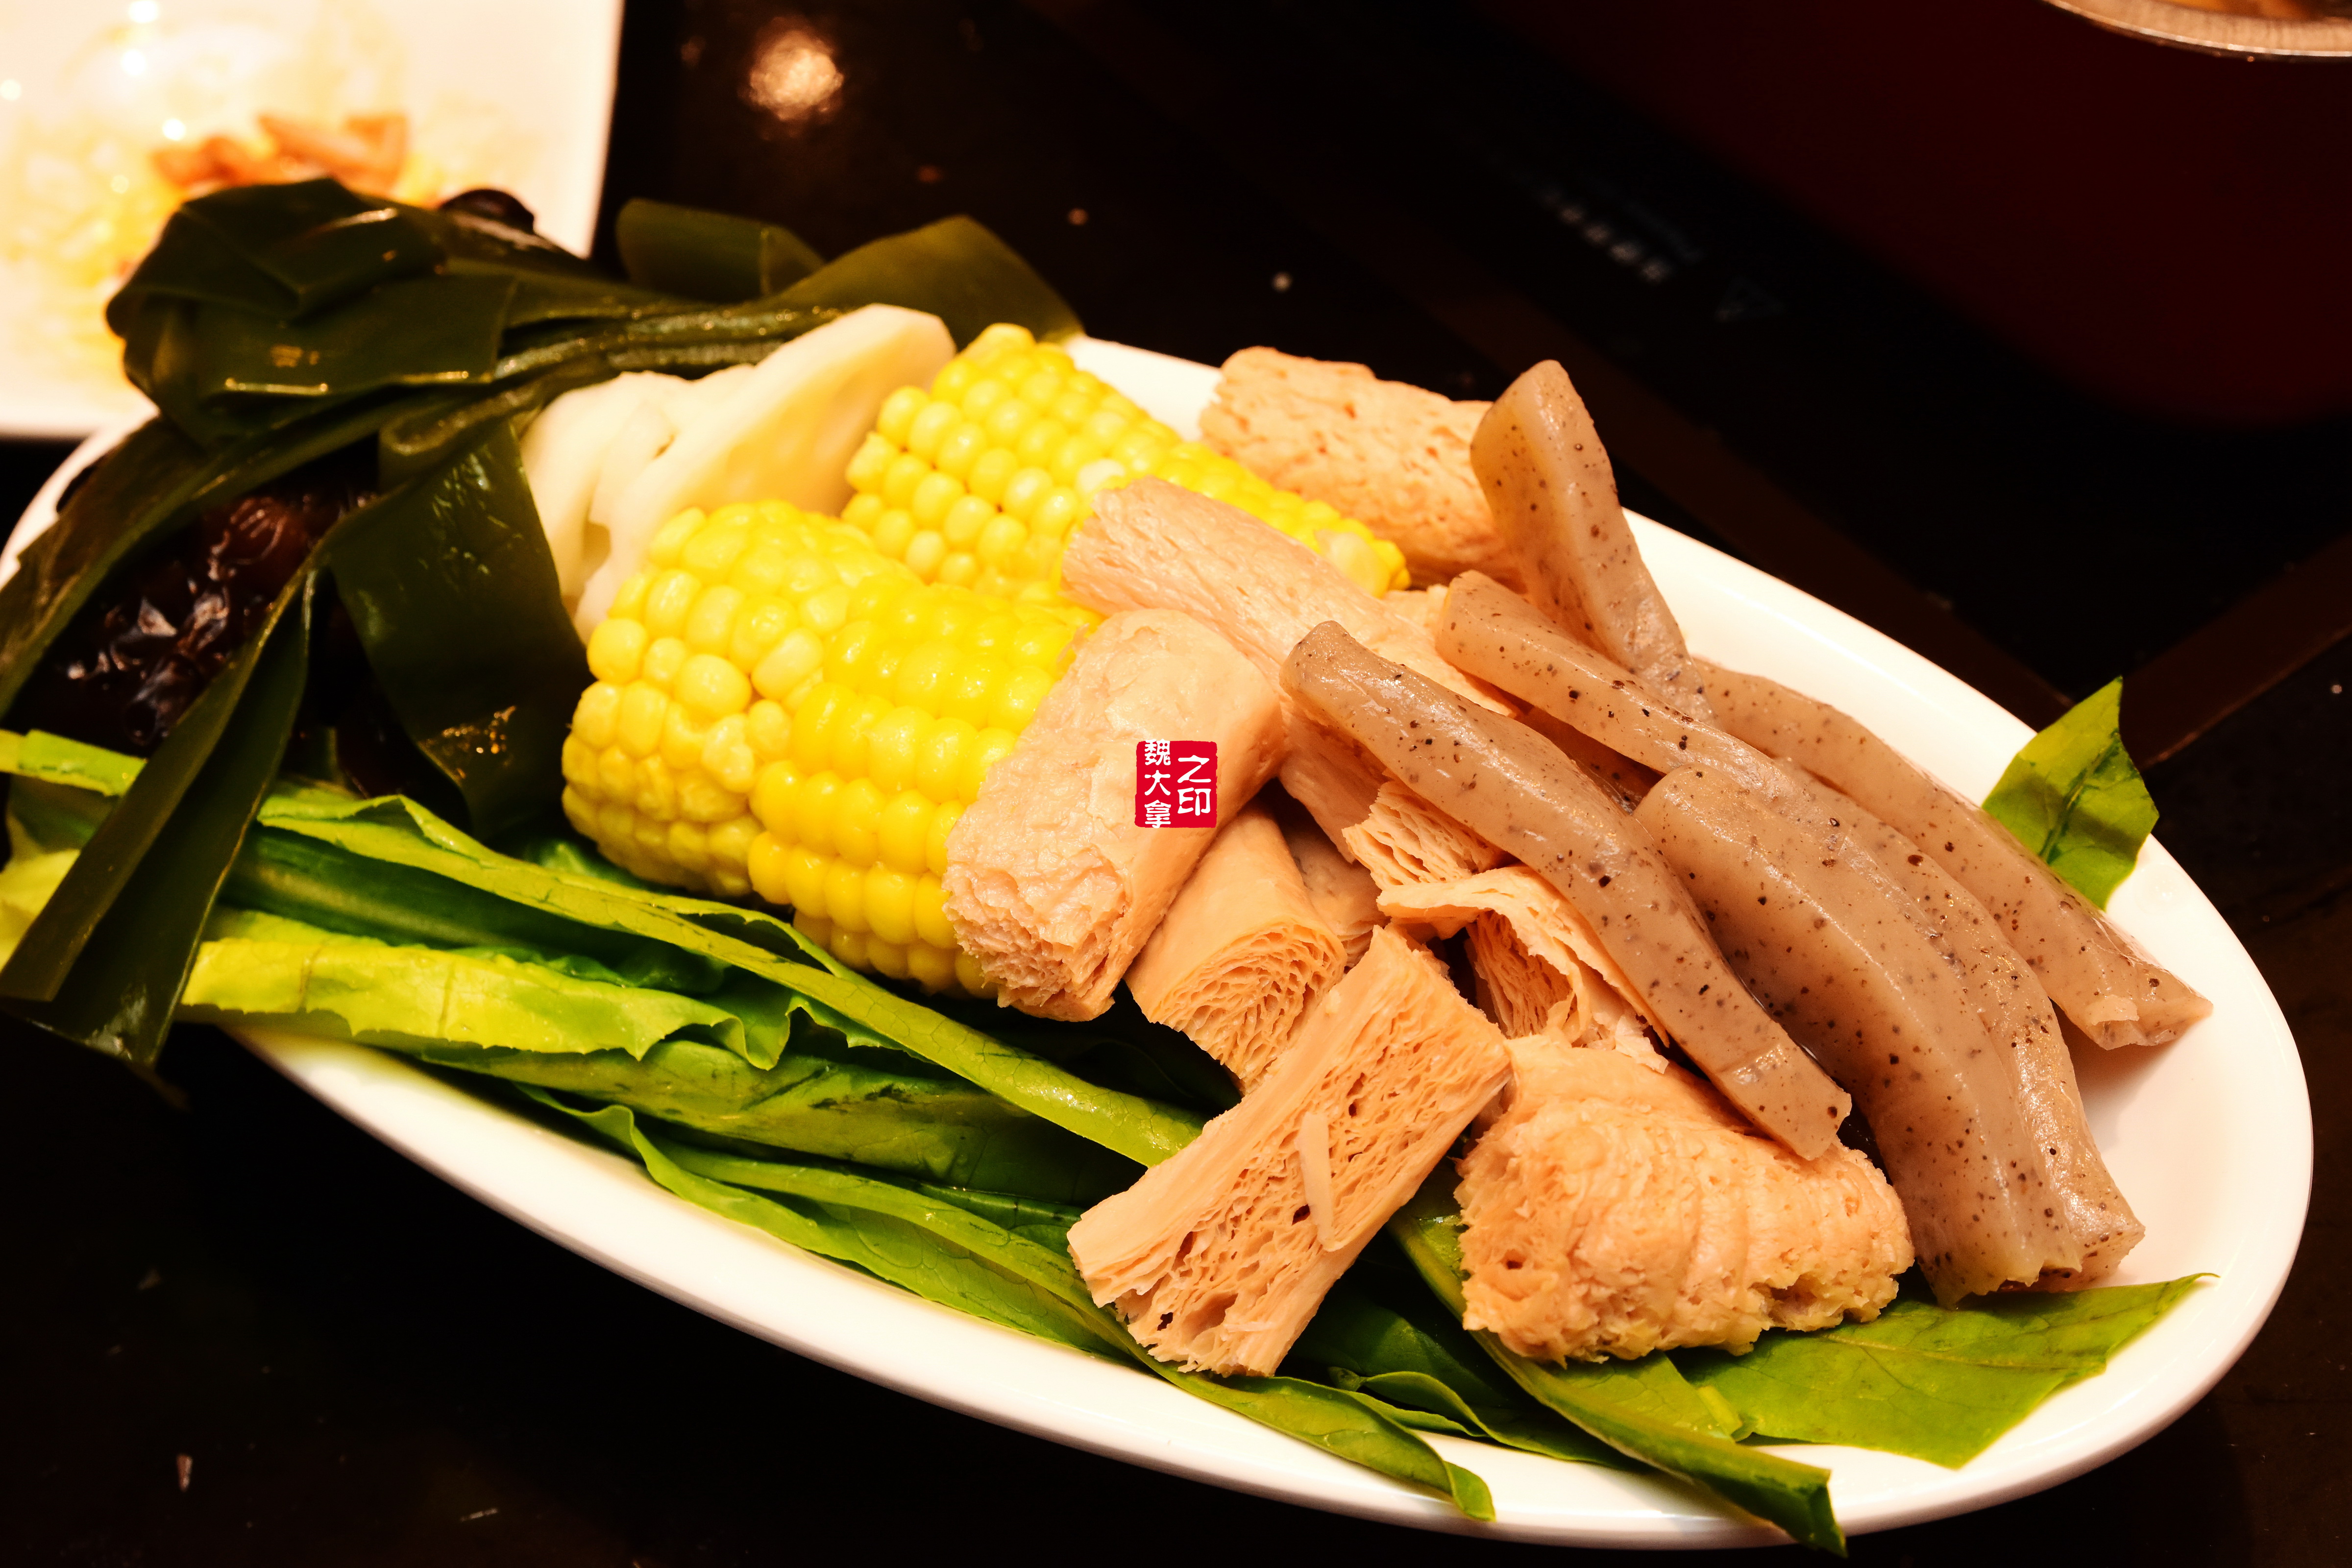 鸡胗卷,又是一道新菜品,粉嫩嫩的颜色,入锅涮煮,口感爽脆!